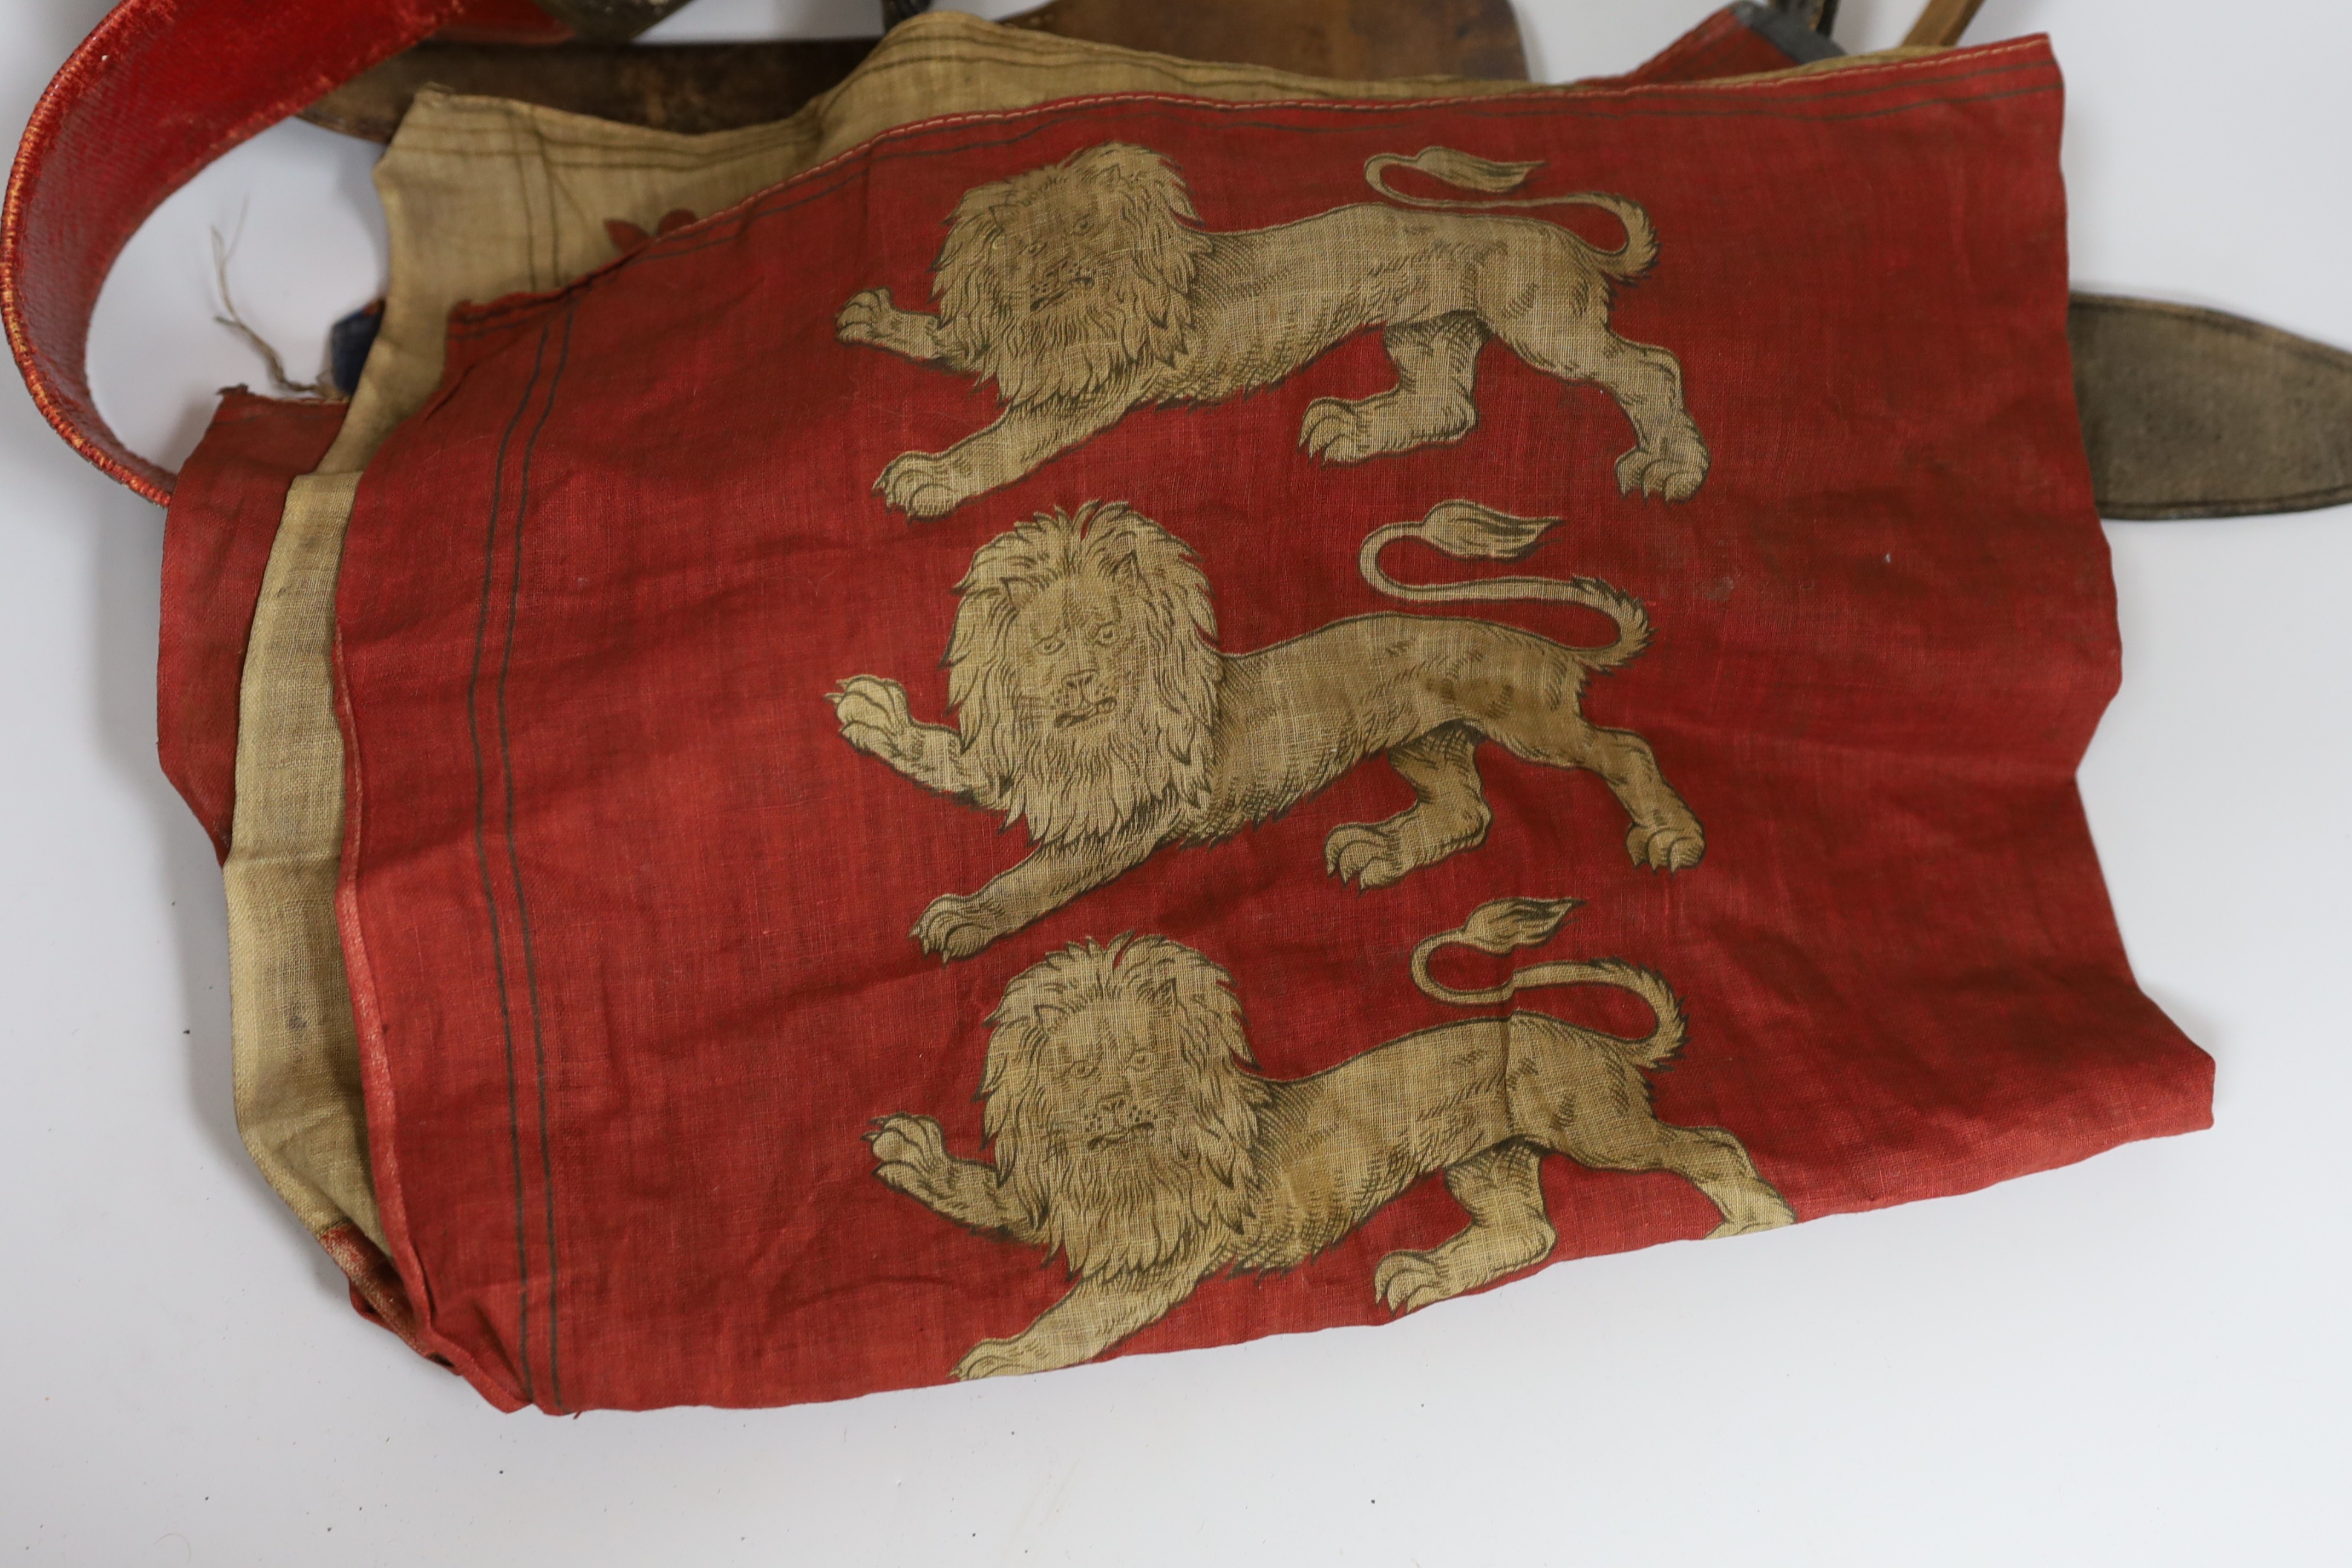 A Royal Naval gilt brass mounted officers belt, an Edwardian Dieu et mon droit belt, a Victorian printed flag and A Victorian Yorkshire Regiment officers brocade sword belt